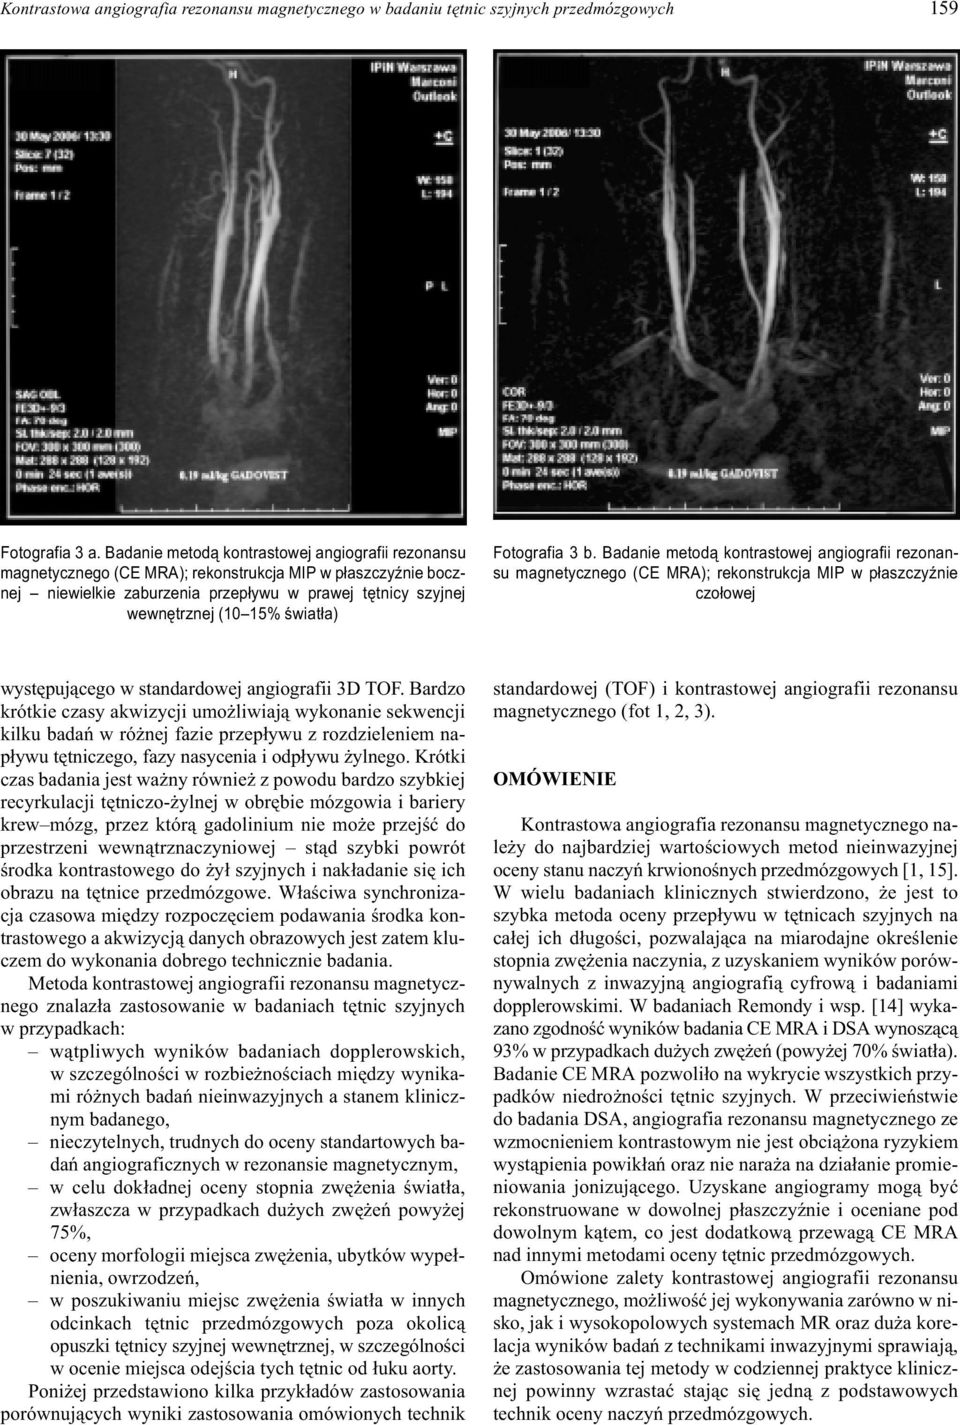 œwiat³a) Fotografia 3 b. Badanie metod¹ kontrastowej angiografii rezonansu magnetycznego (CE MRA); rekonstrukcja MIP w p³aszczyÿnie czo³owej wystêpuj¹cego w standardowej angiografii 3D TOF.